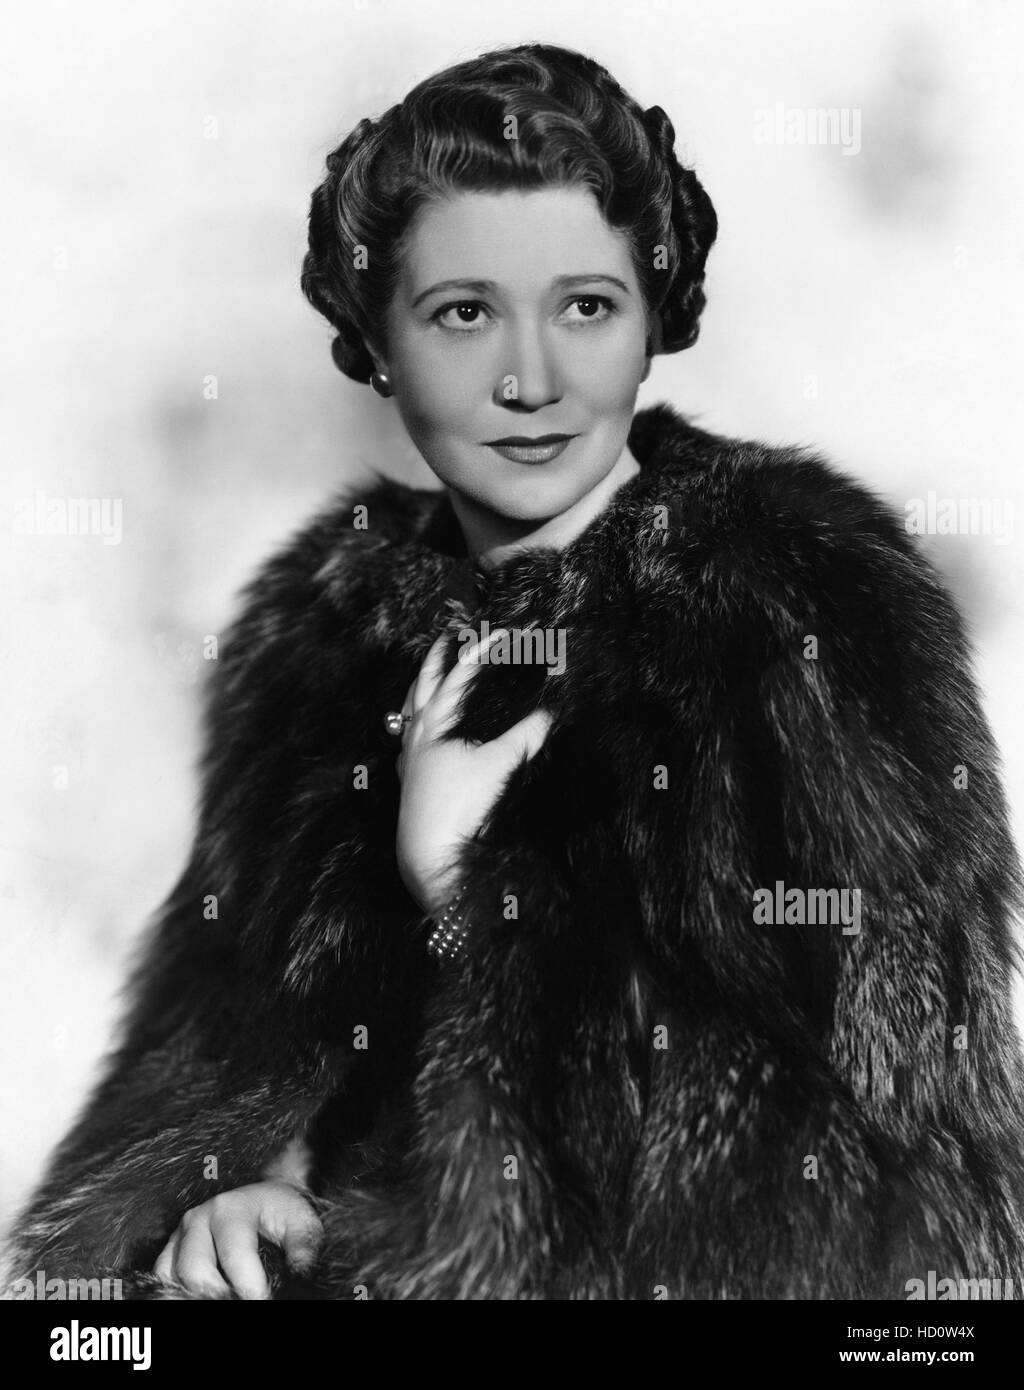 Fay Bainter, 1938 Stock Photo - Alamy